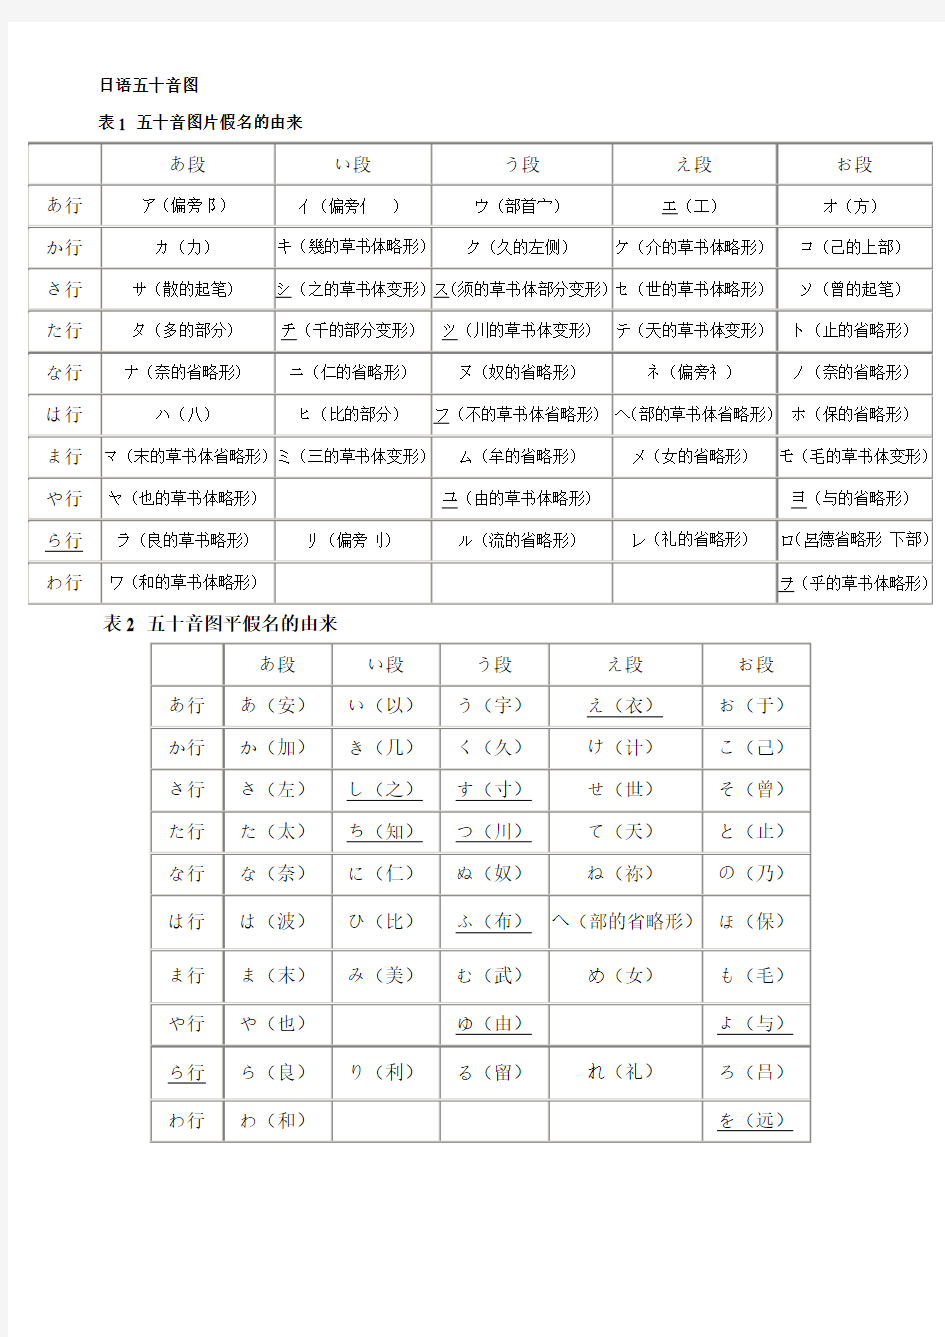 日语五十音图实用版,打印版,书面学习